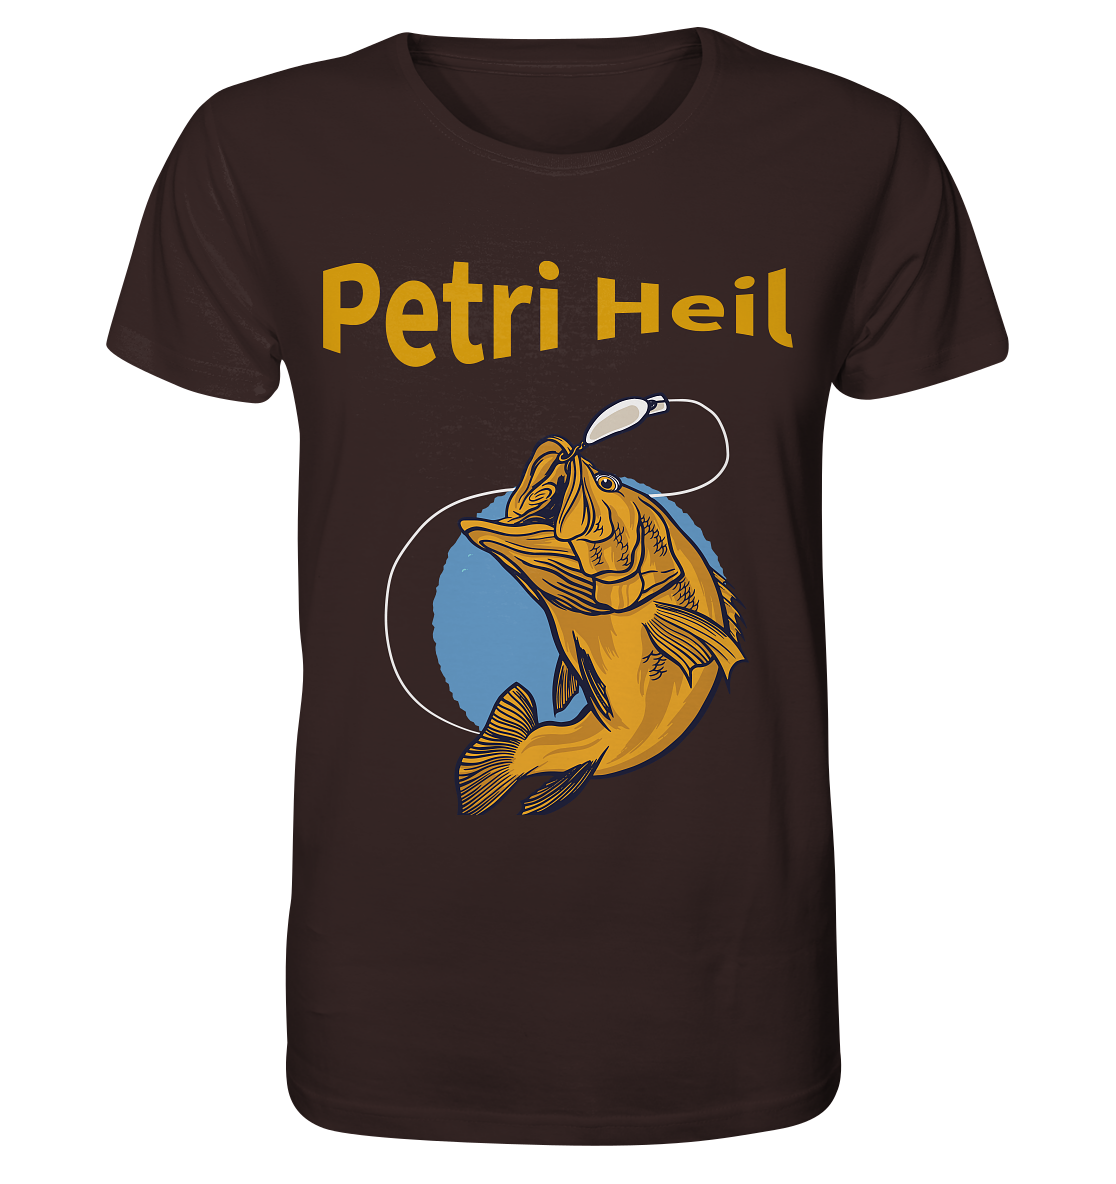 Petri-Heil - Organic Shirt - Online Kaufhaus München